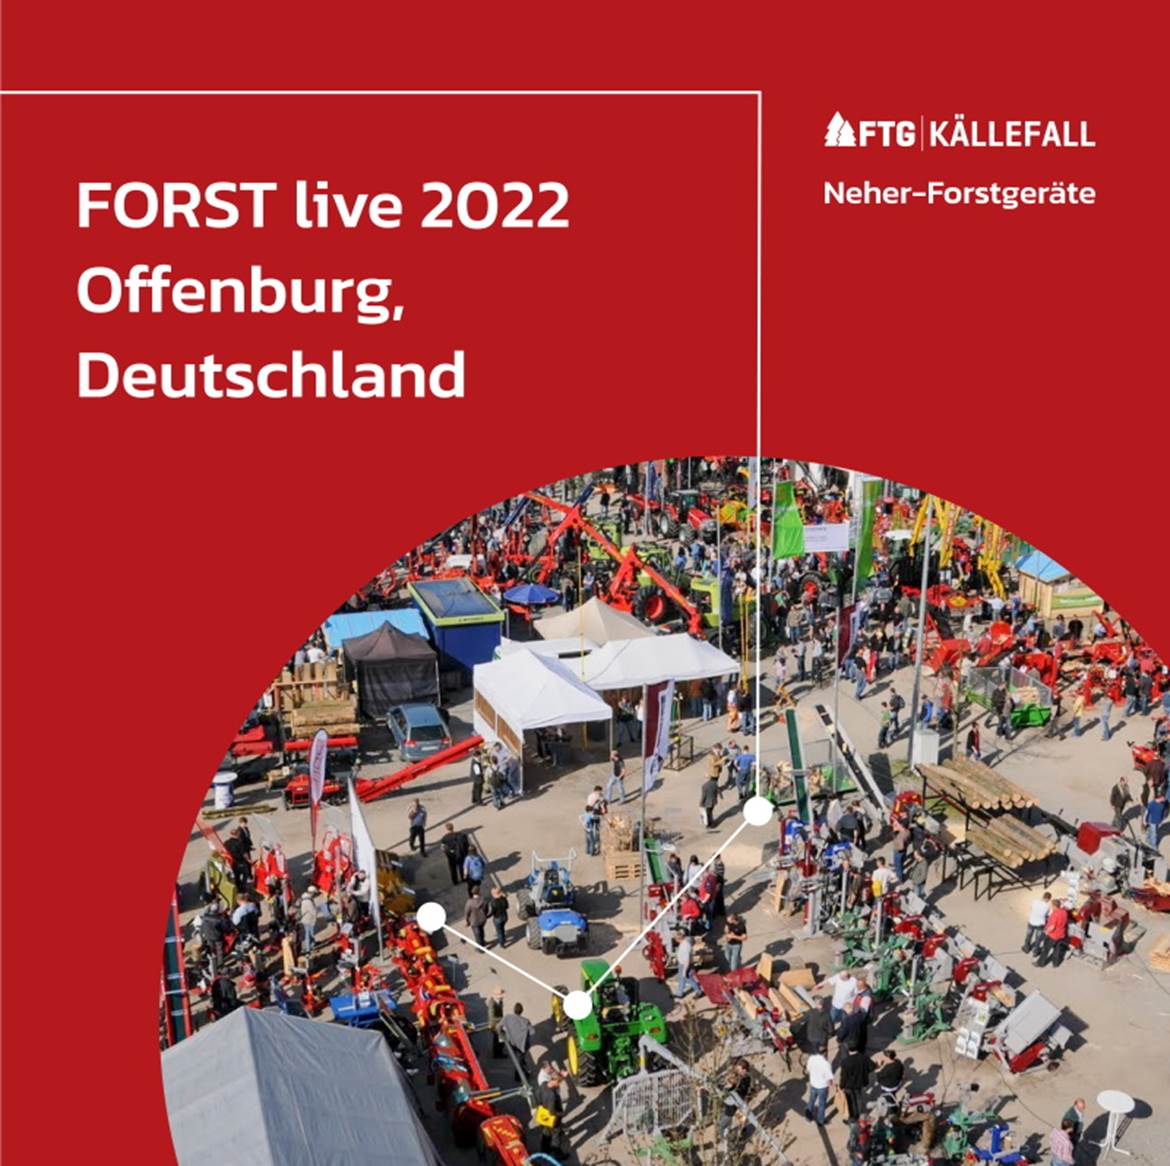 FTG Källefall Neher Forstgeräte FORST live 2022 Messe.jpg